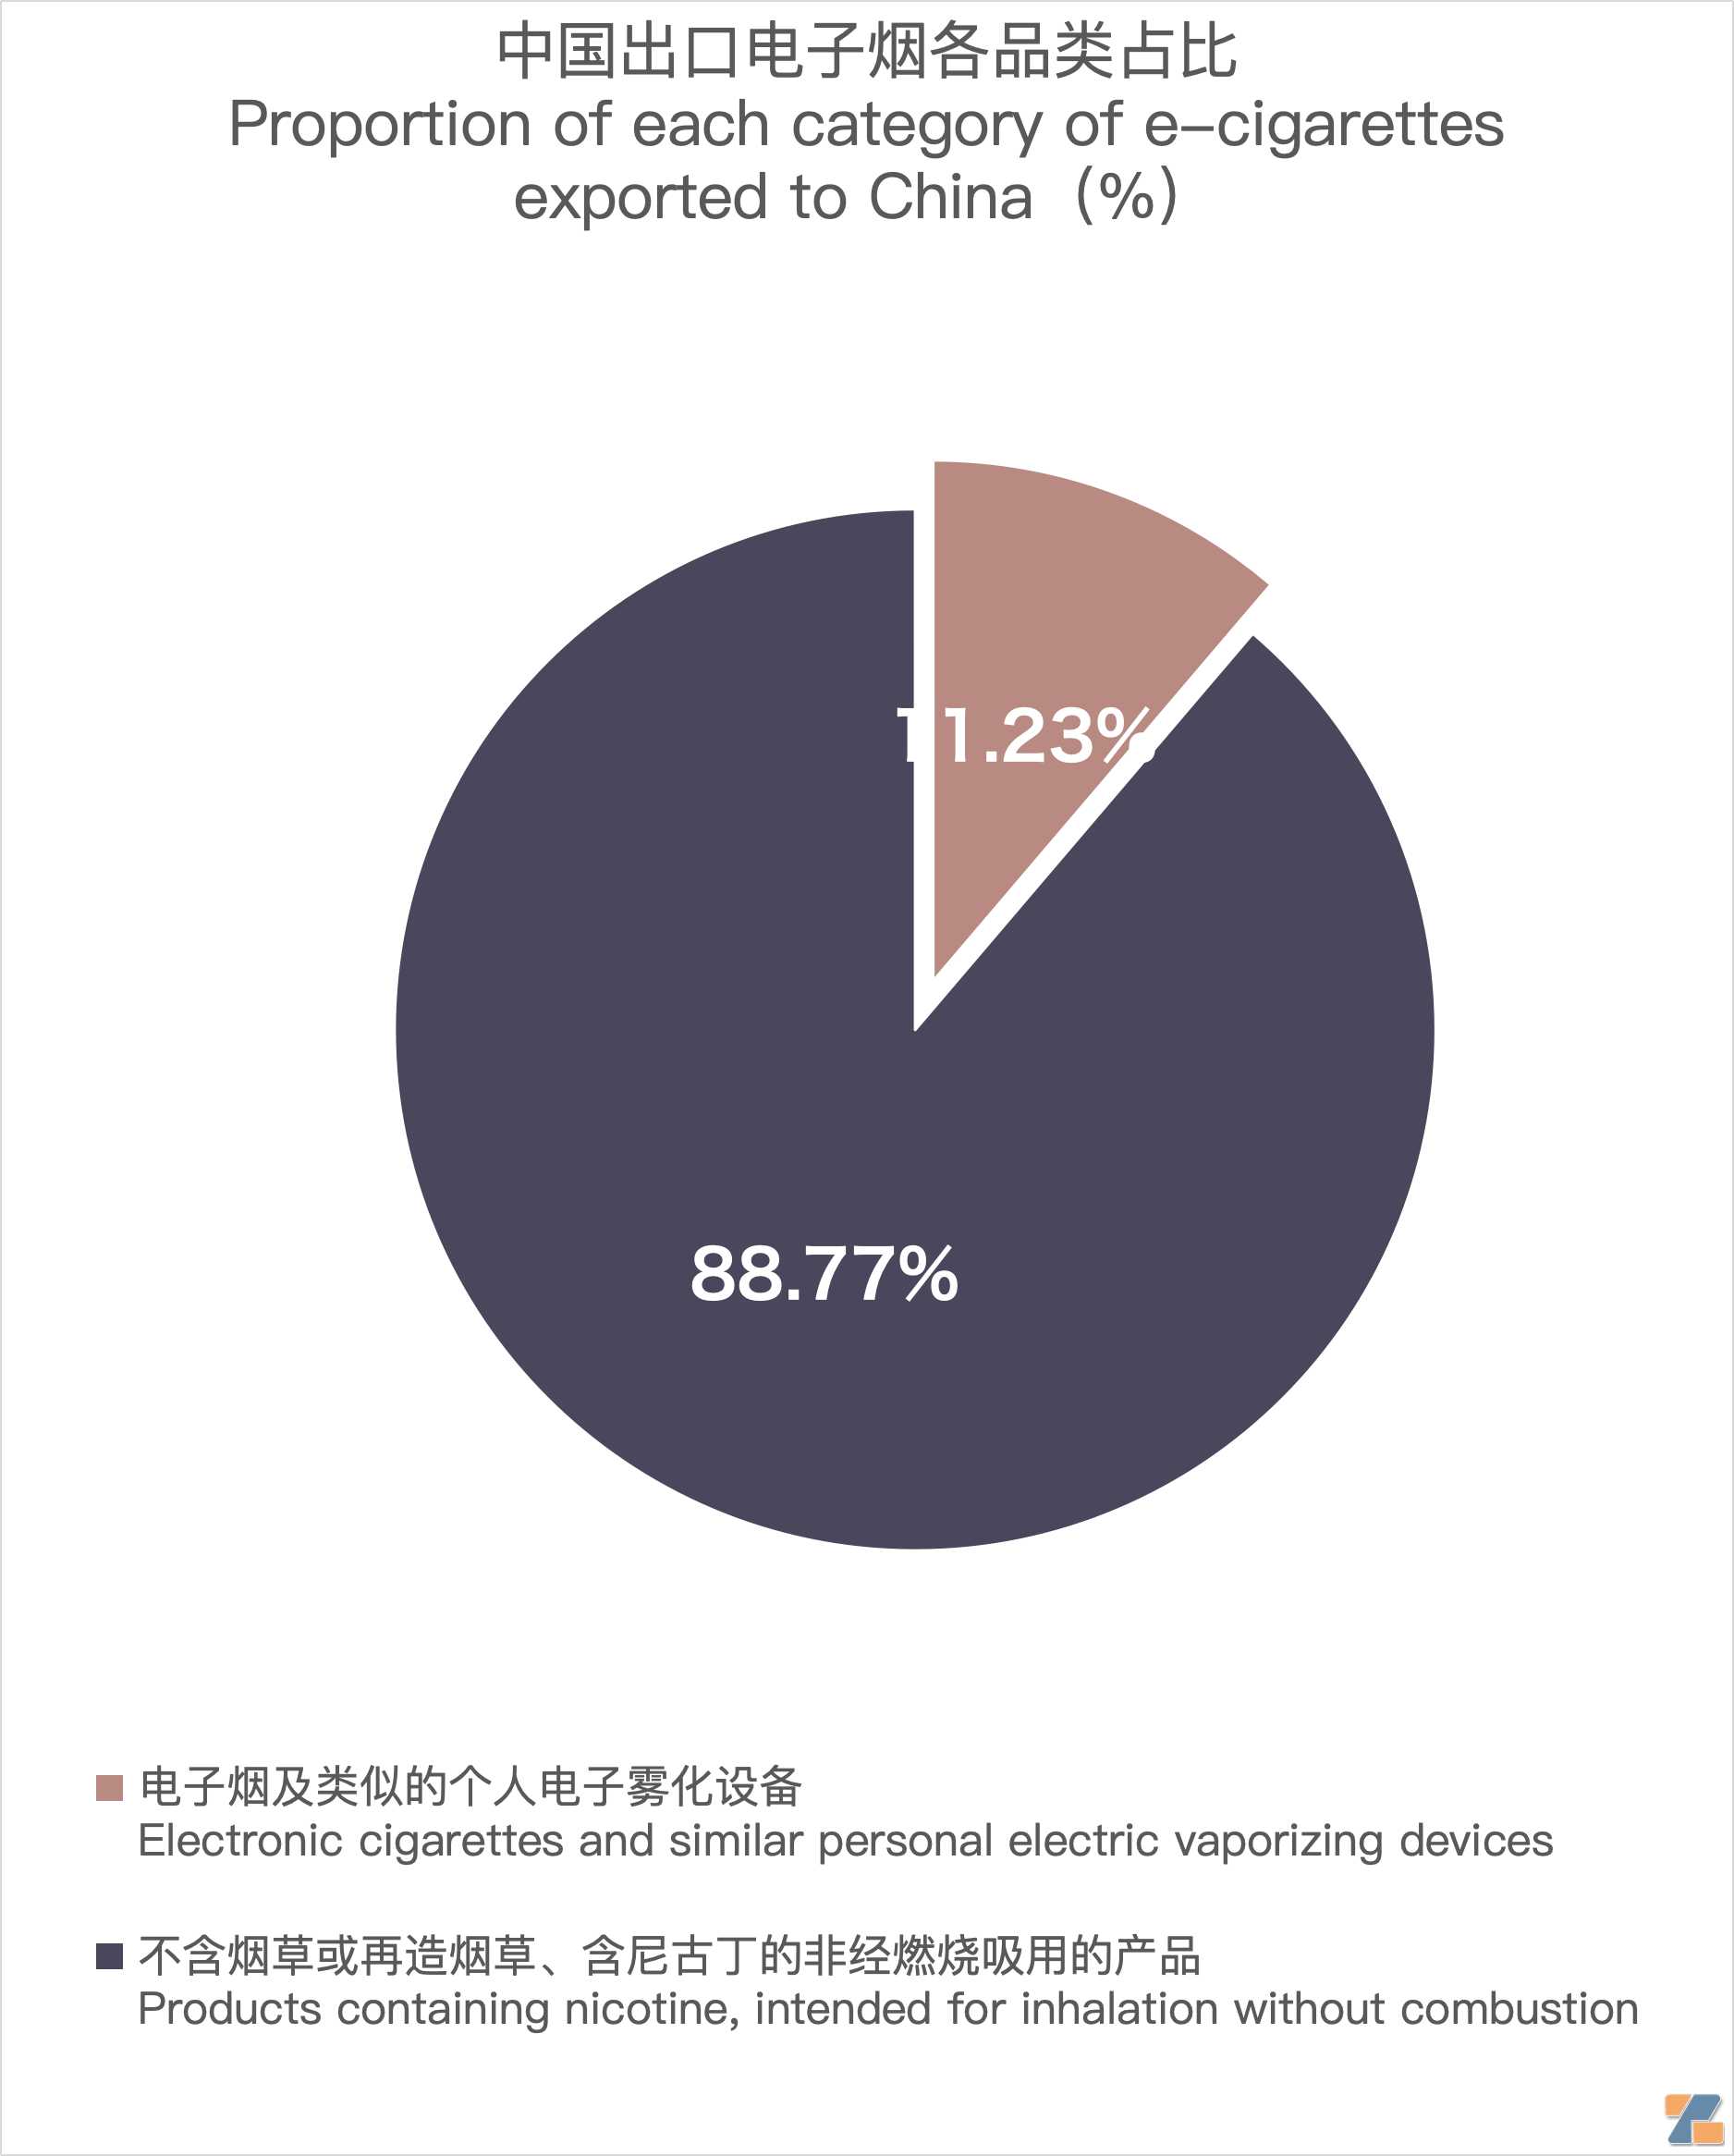 12月中国出口英国电子烟约1.49亿美元 环比增长56.31%